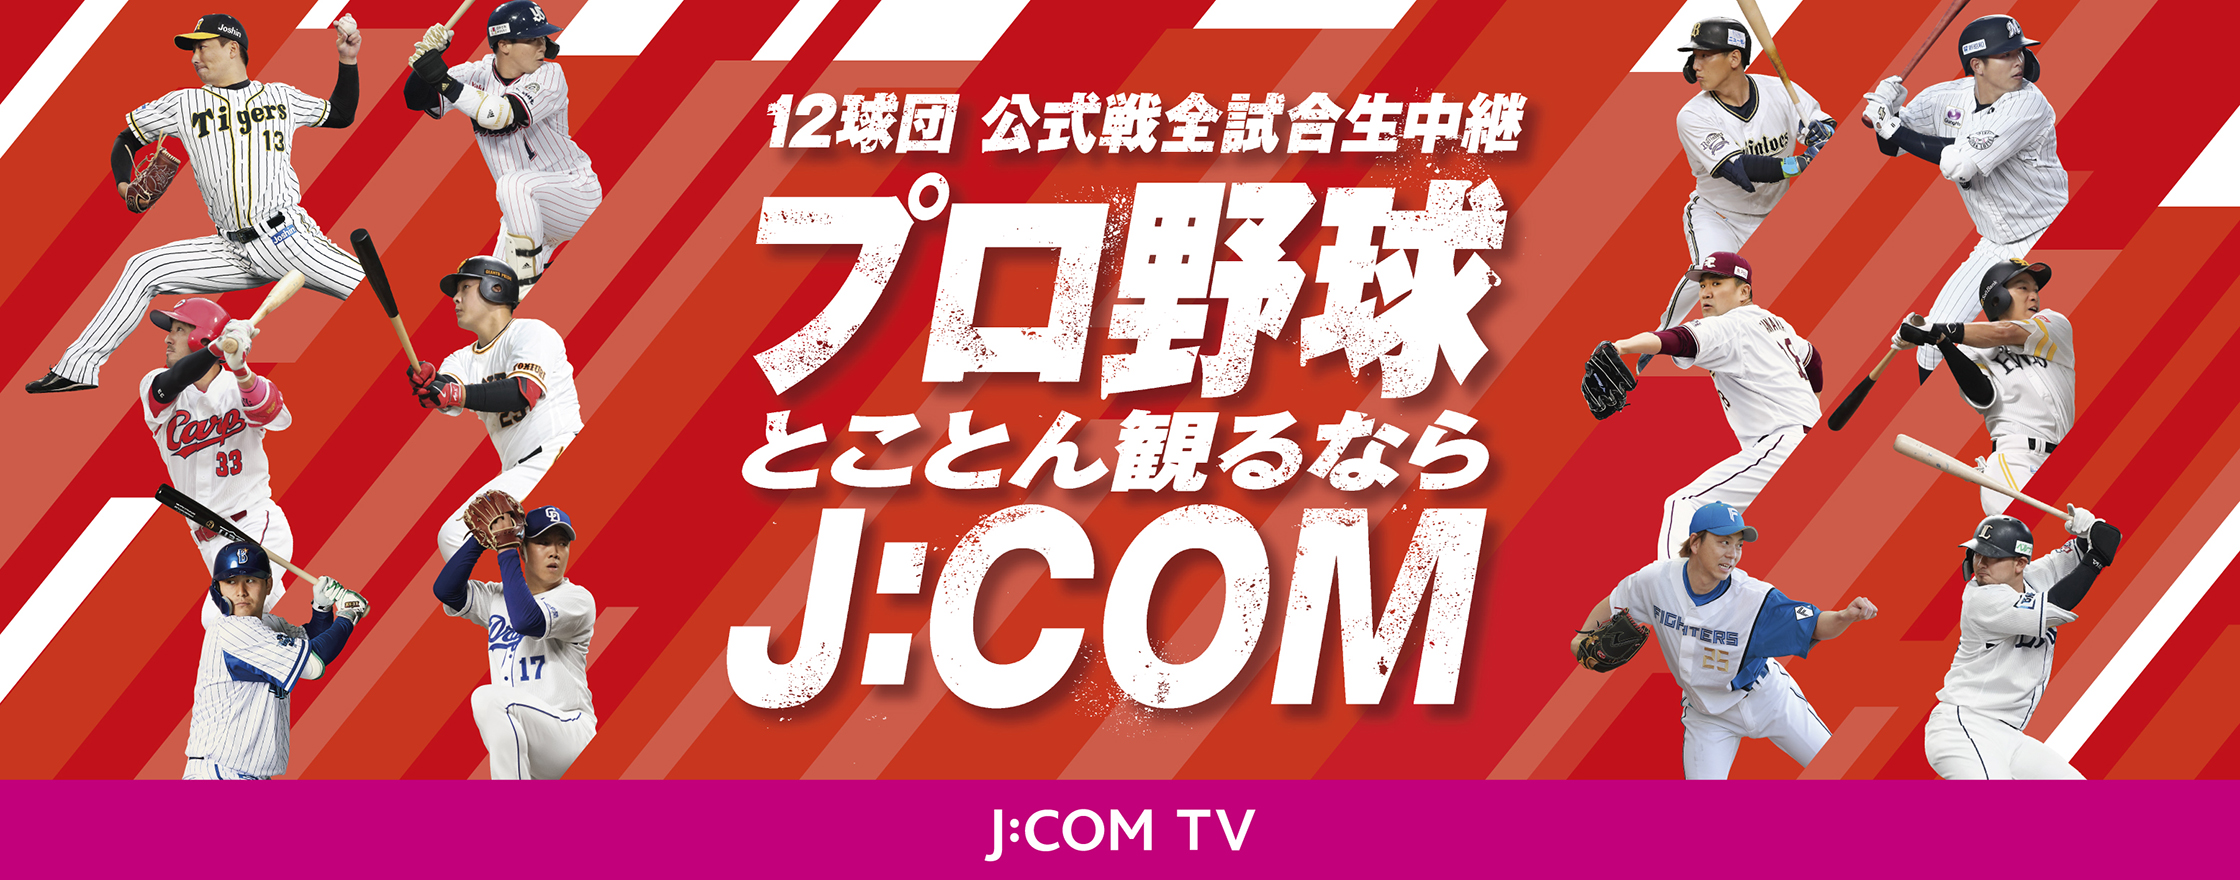 12球団 公式戦全試合生中継 プロ野球とことん観るならJ:COM J:COM TV